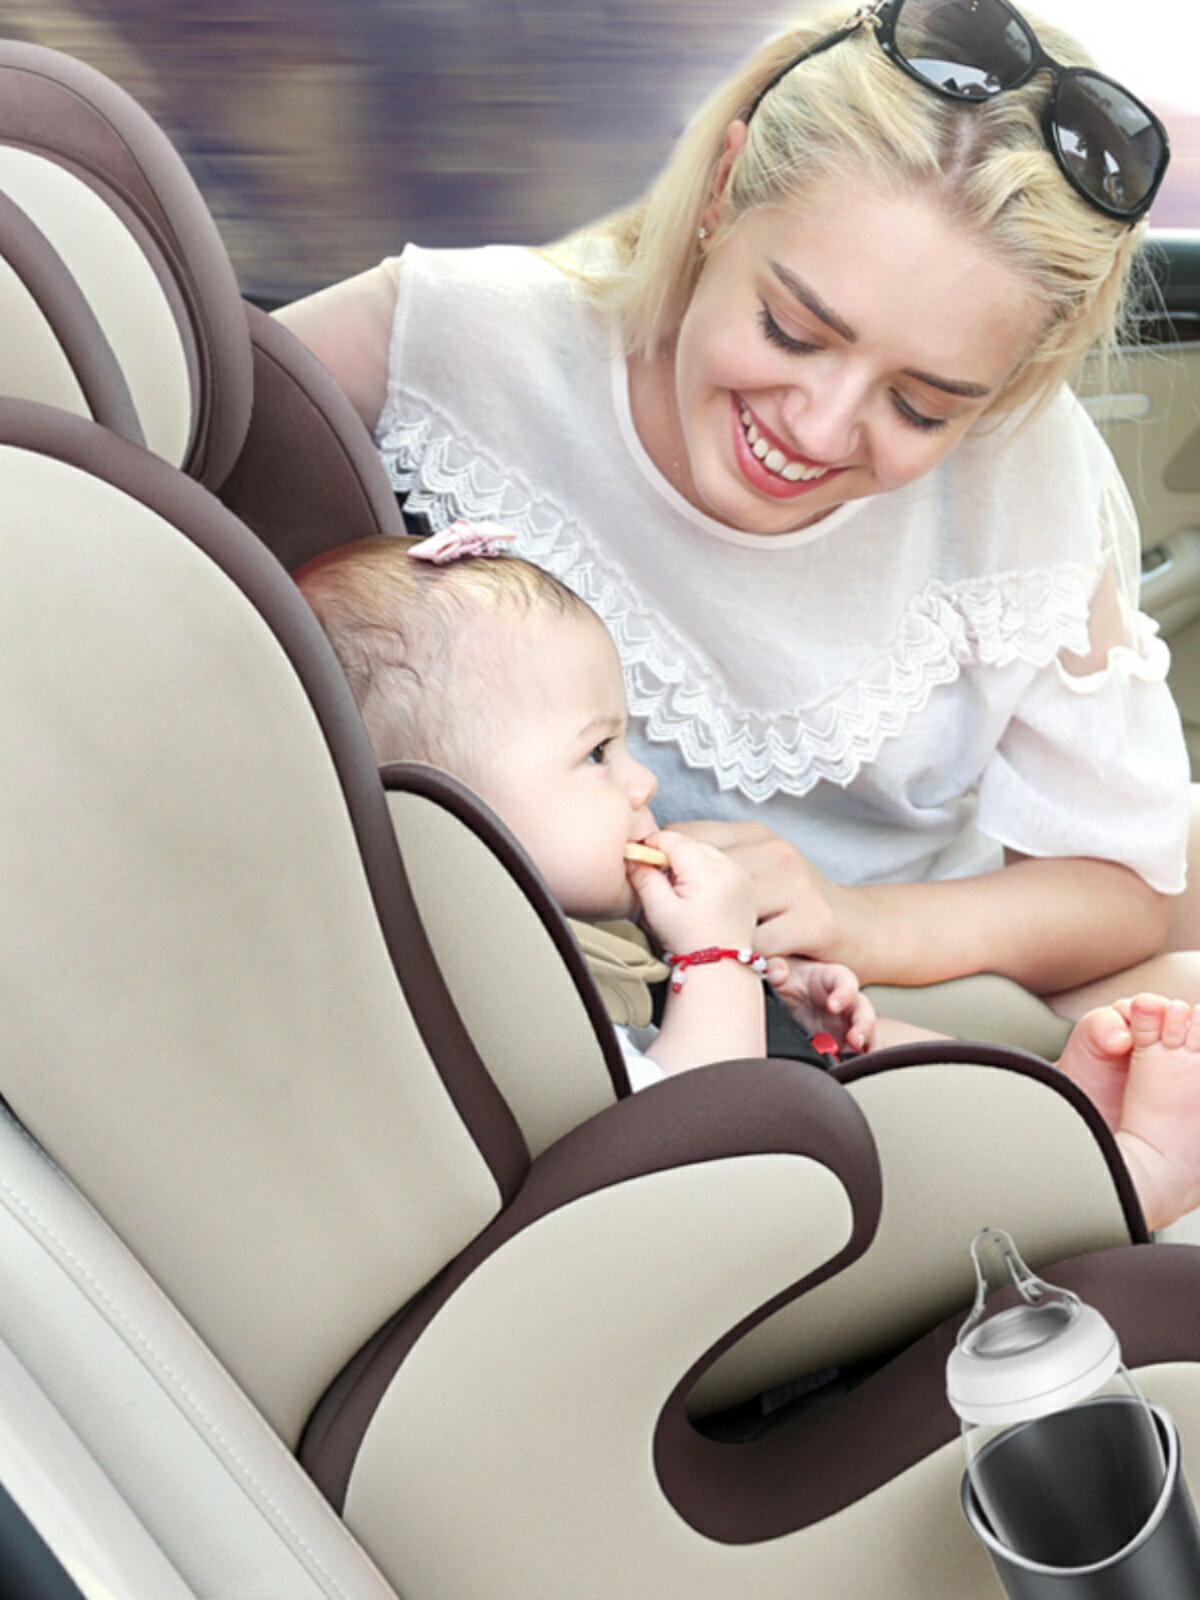 兒童安全座椅車載簡易嬰兒寶寶可躺汽車用新生兒0-2-3-4-12歲通用